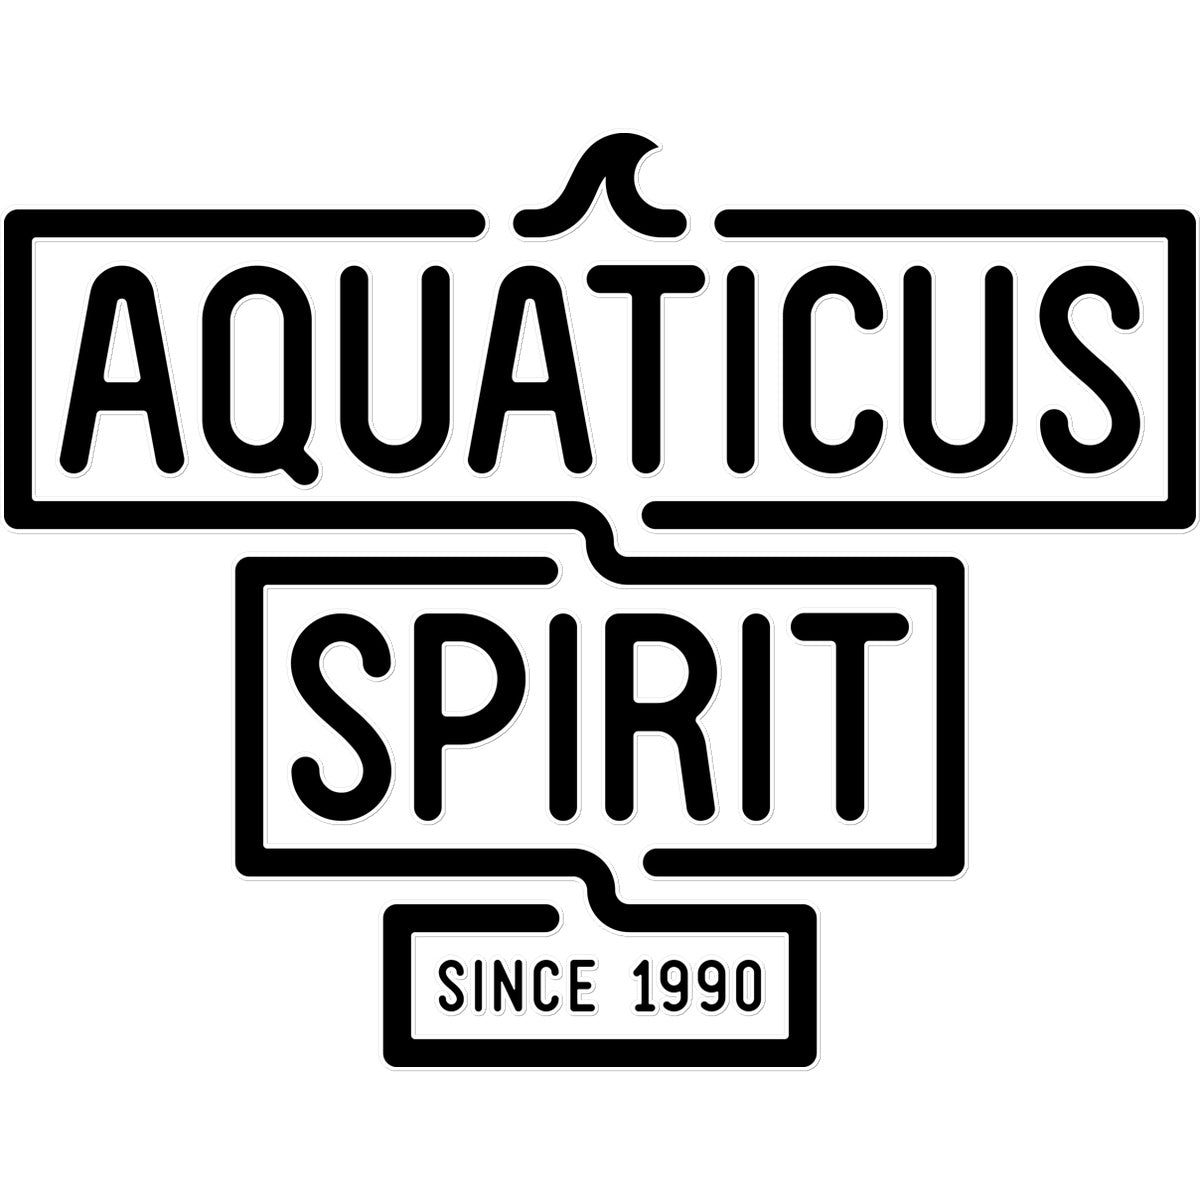 AQUA - 02 - Aquaticus Spirit - Temporäre Tätowierung